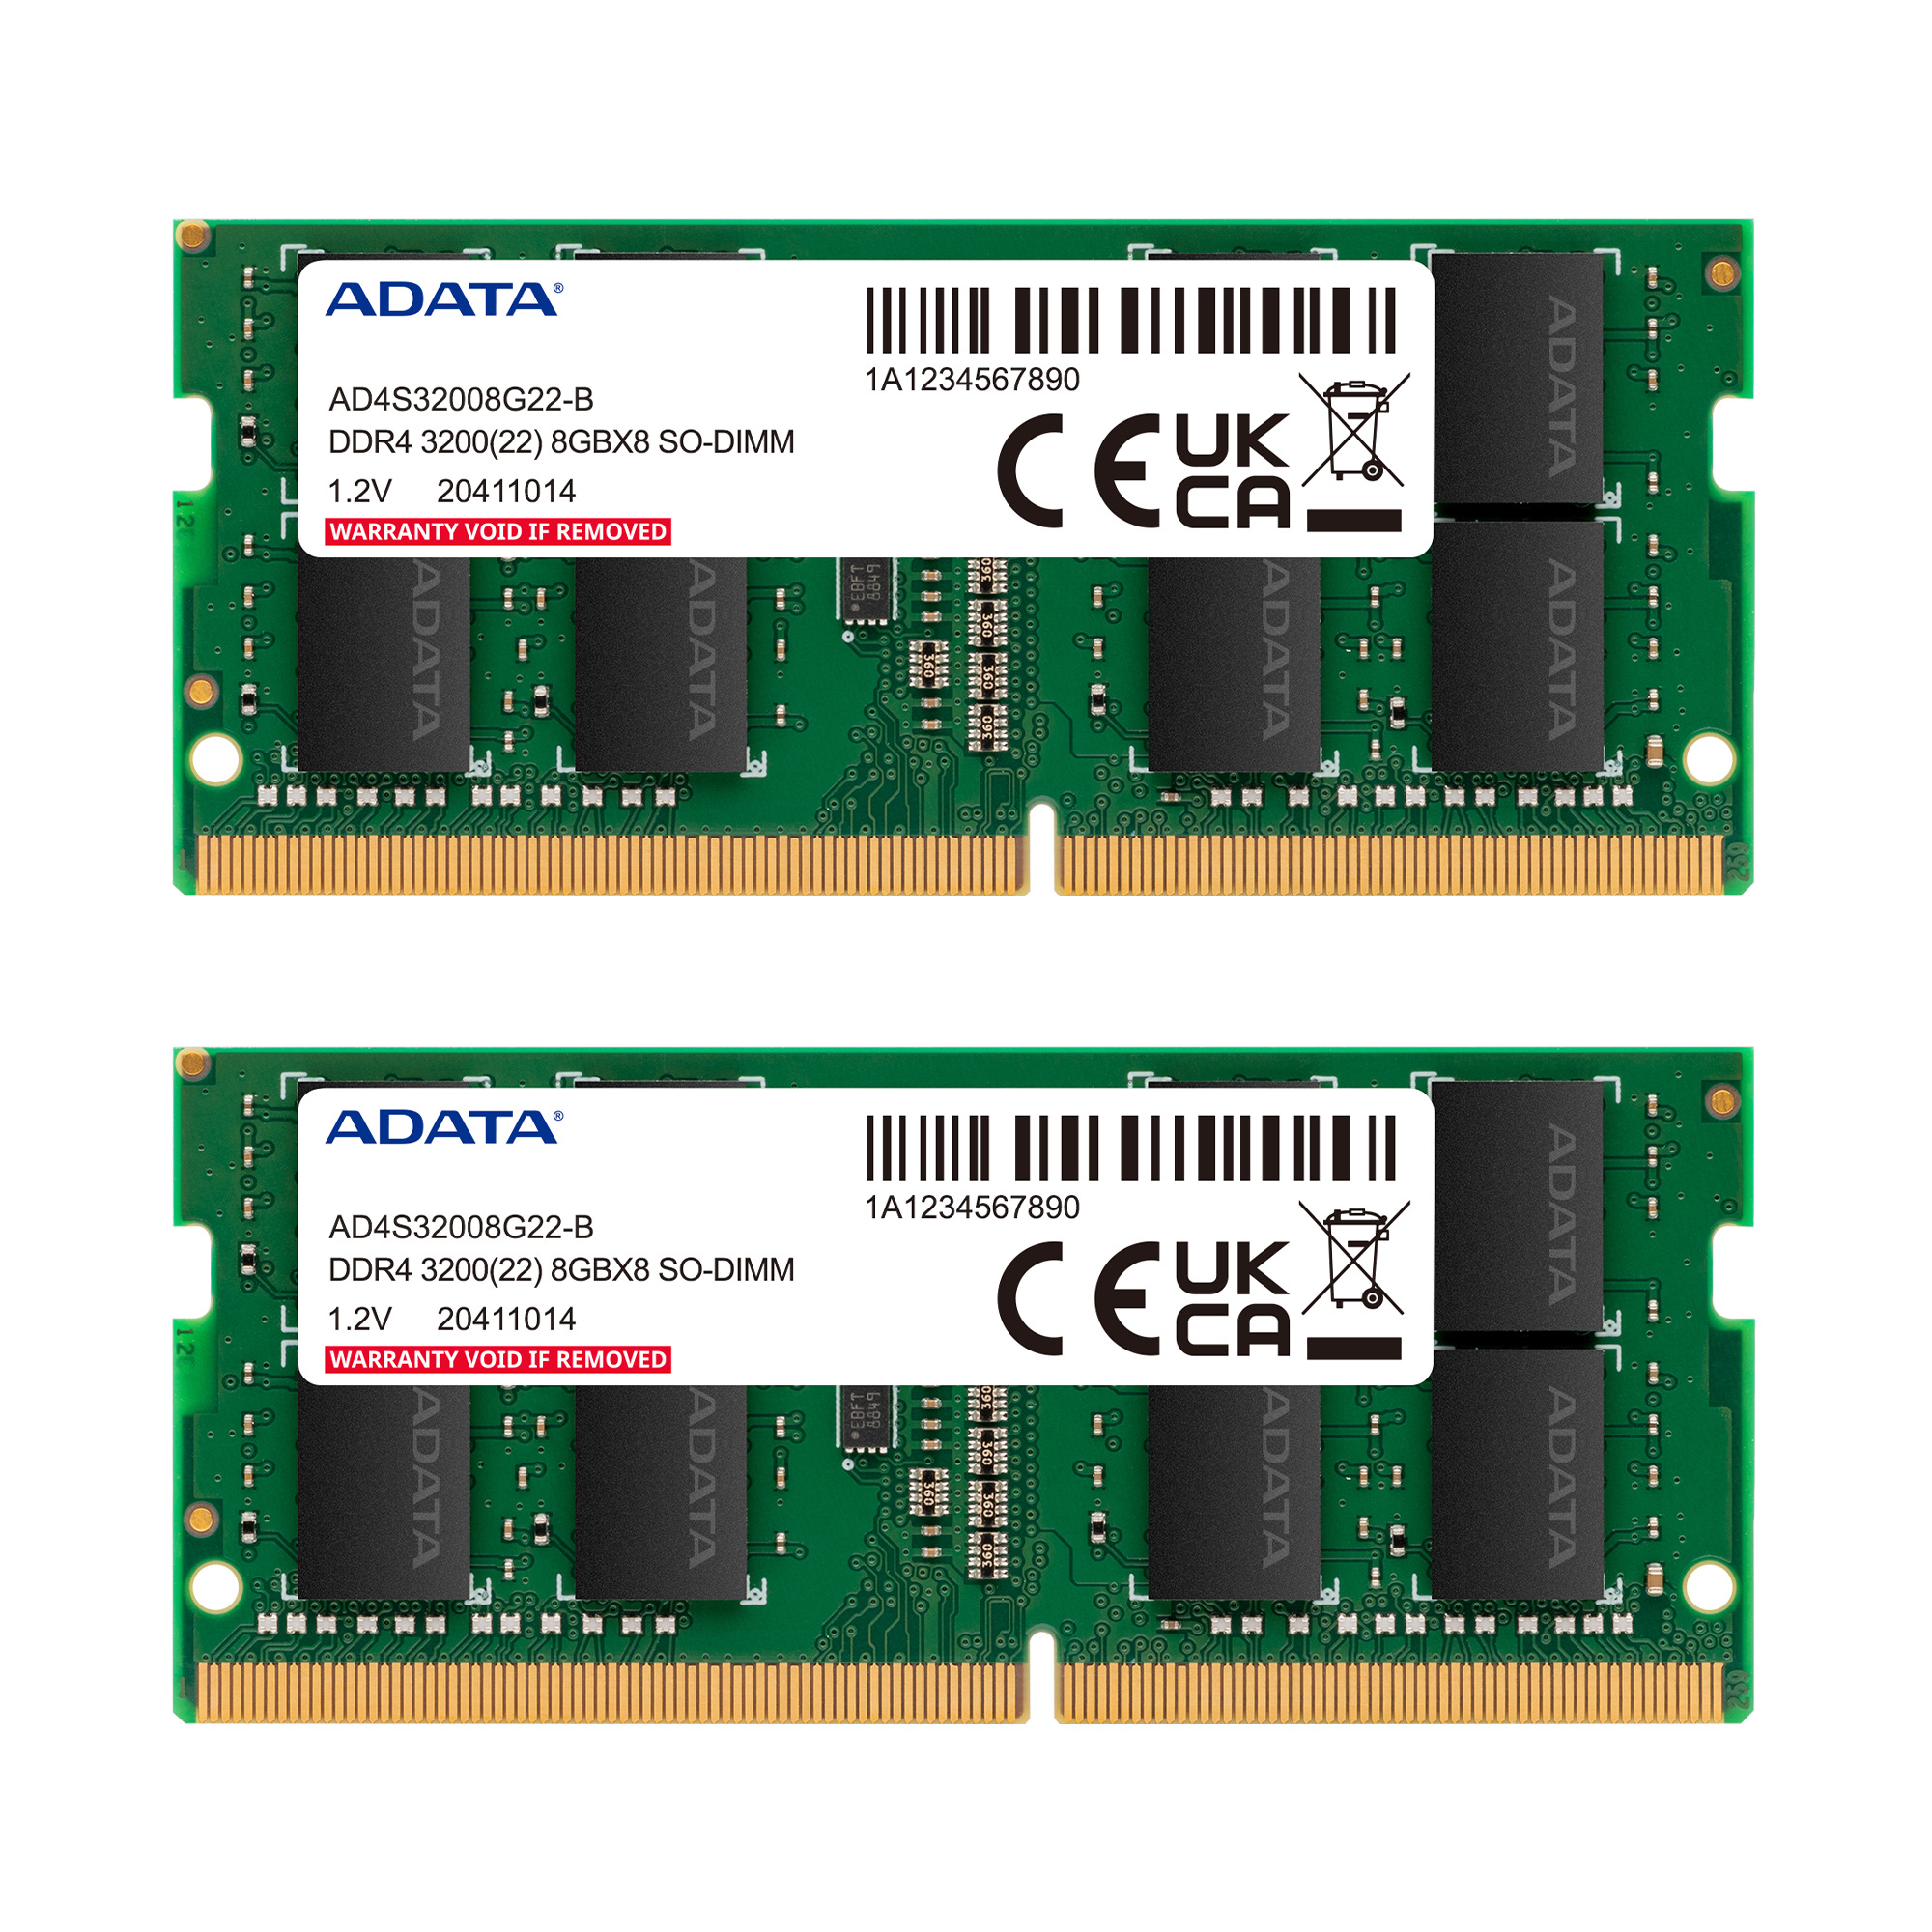 MEMORIA ADATA DDR4 SO-DIMM 8GB/3200 MHZ AD4S320016G22-SGN
 